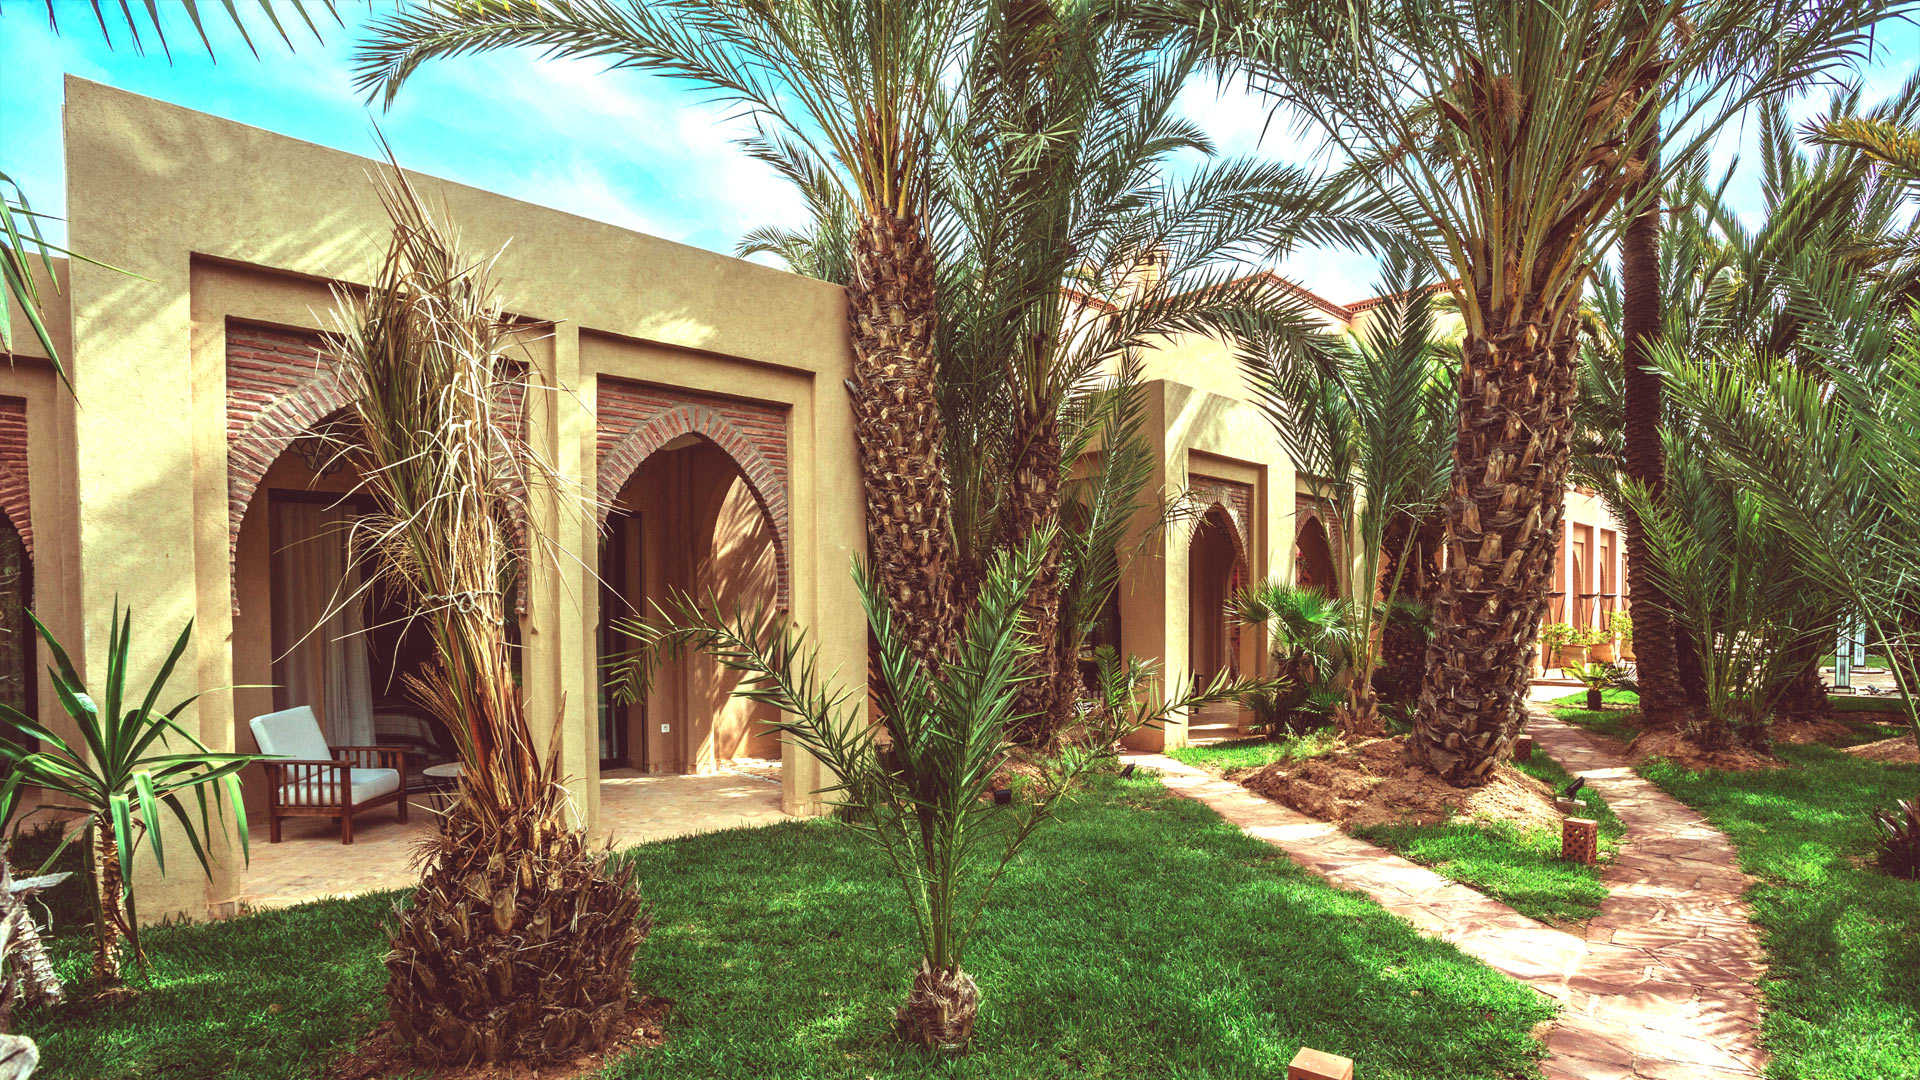 Villa Villa Palmeraie 32, Rental in Marrakech